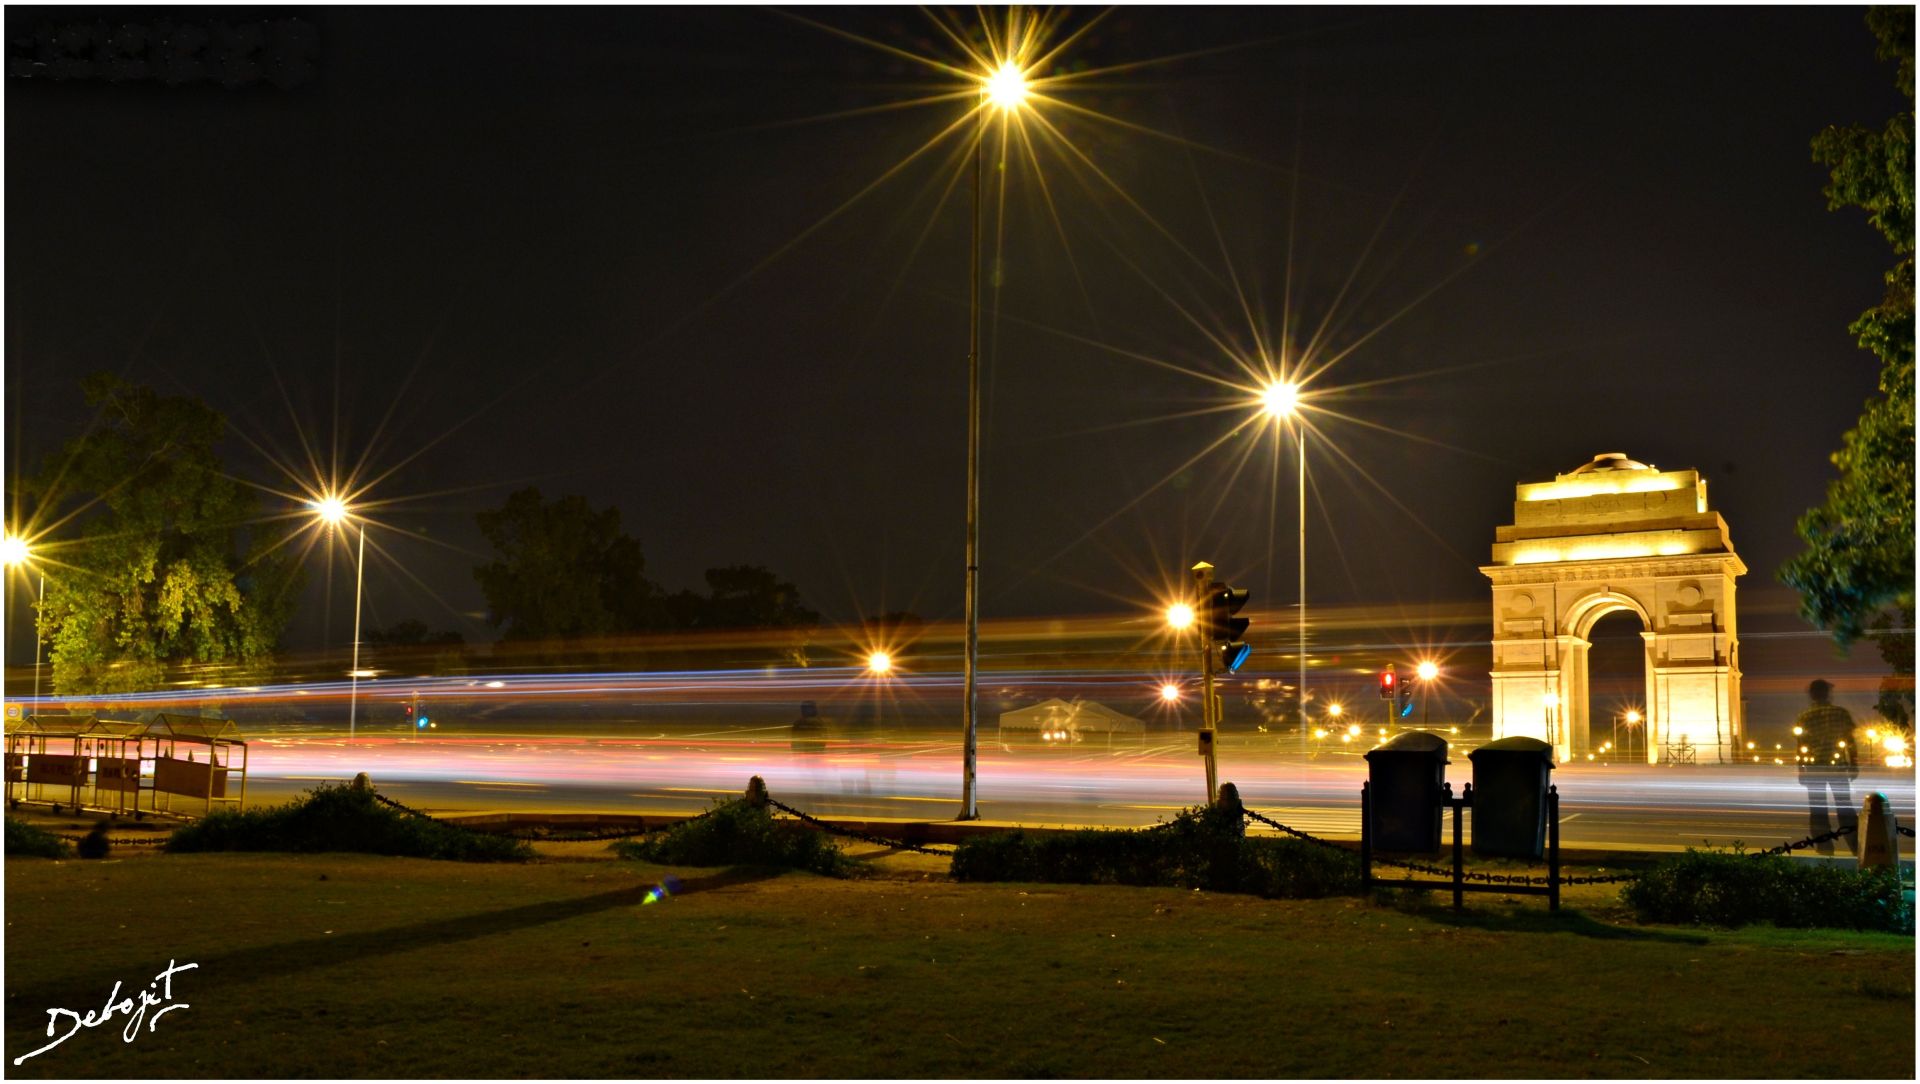 aeropuerto de delhi fondos de pantalla,noche,luz de la calle,cielo,ligero,encendiendo